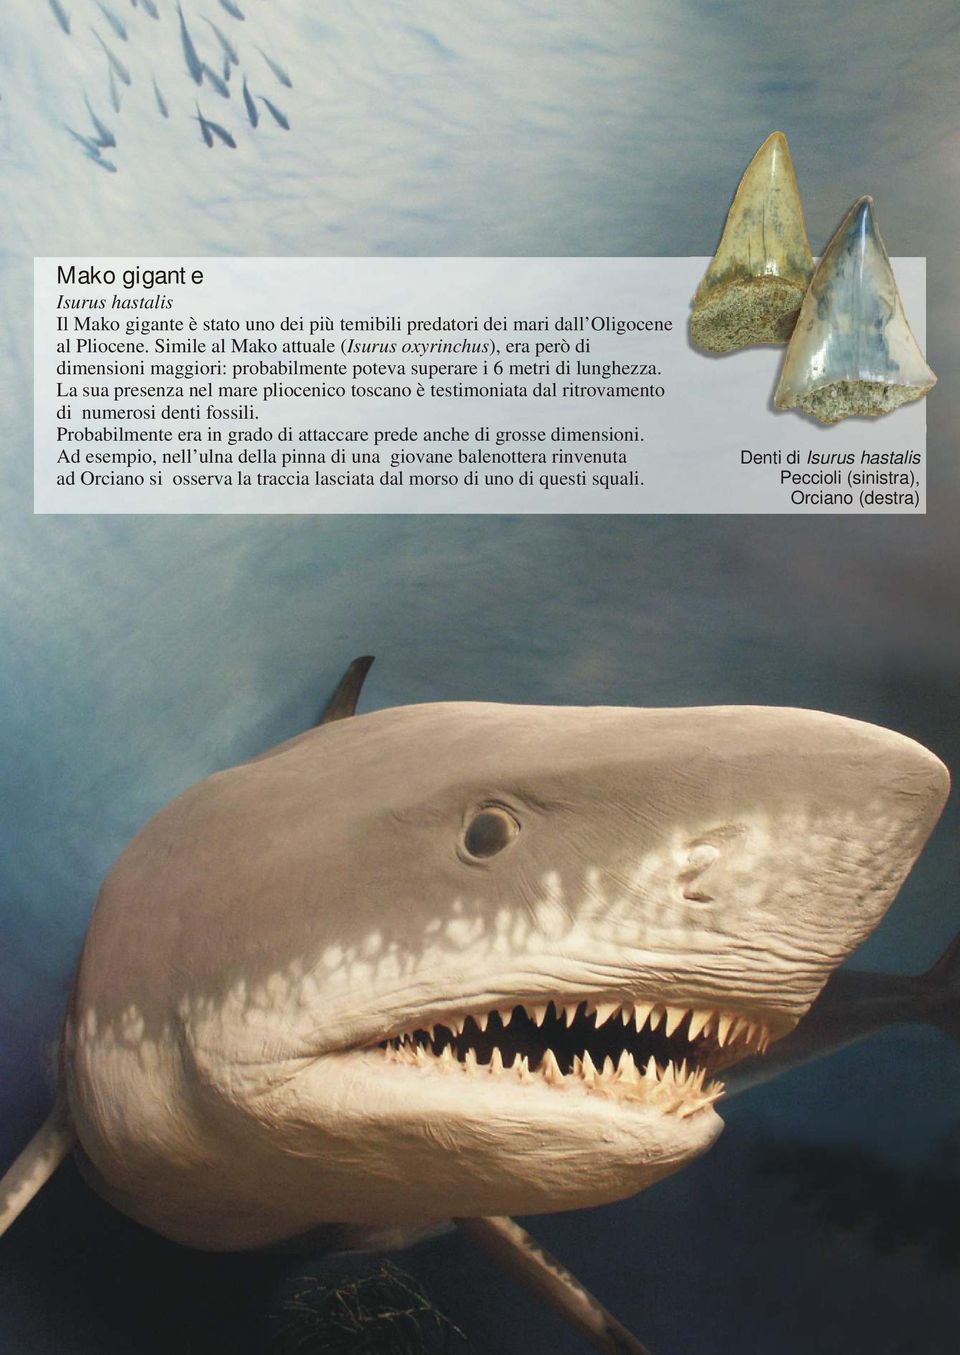 La sua presenza nel mare pliocenico toscano è testimoniata dal ritrovamento di numerosi denti fossili.